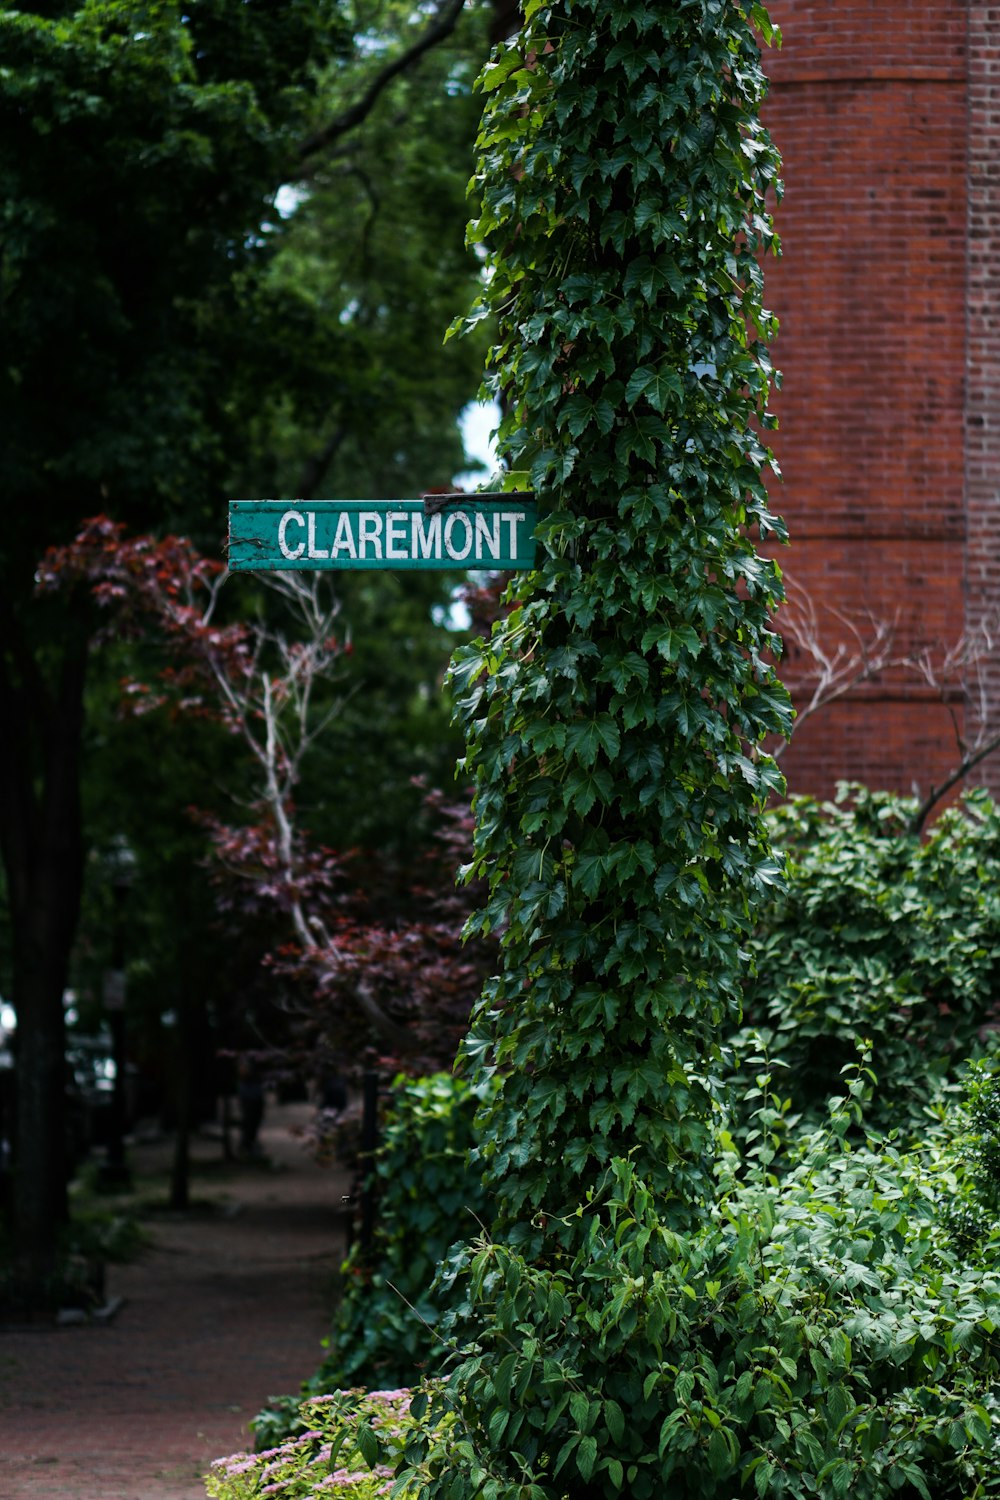 Claremont-Schild auf grünblättrigem Pflanzenpfosten